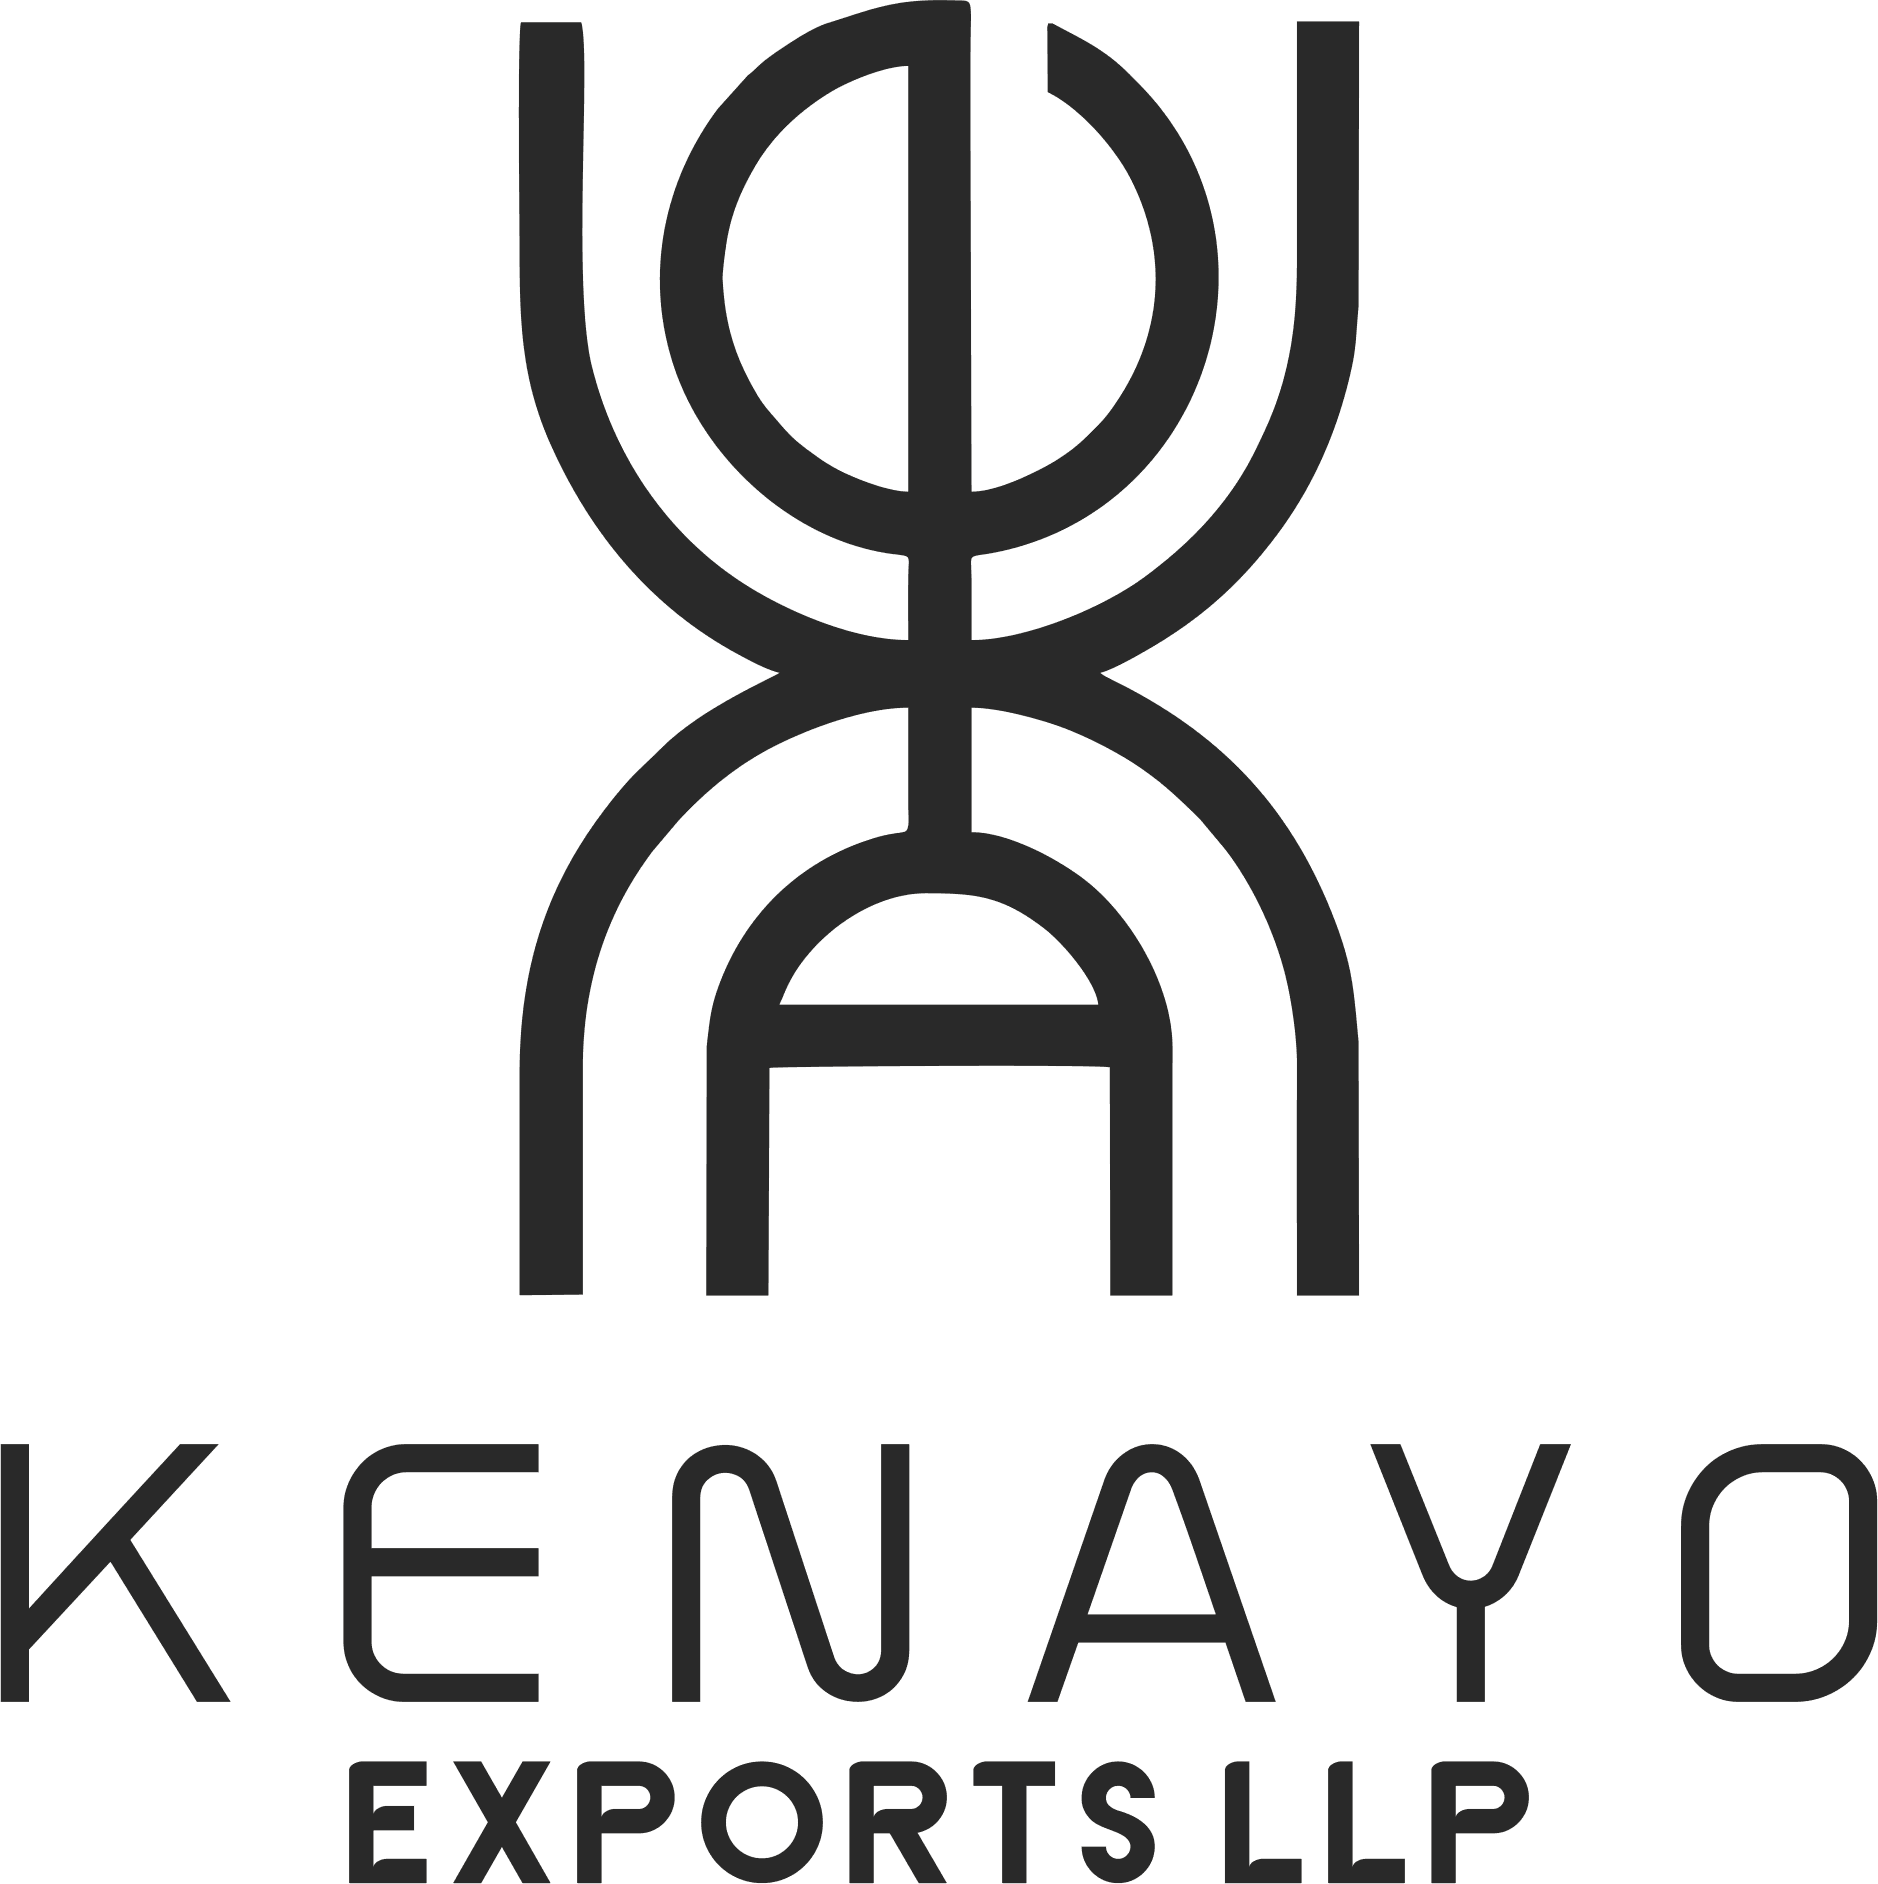 KENAYO EXPORTS LLP